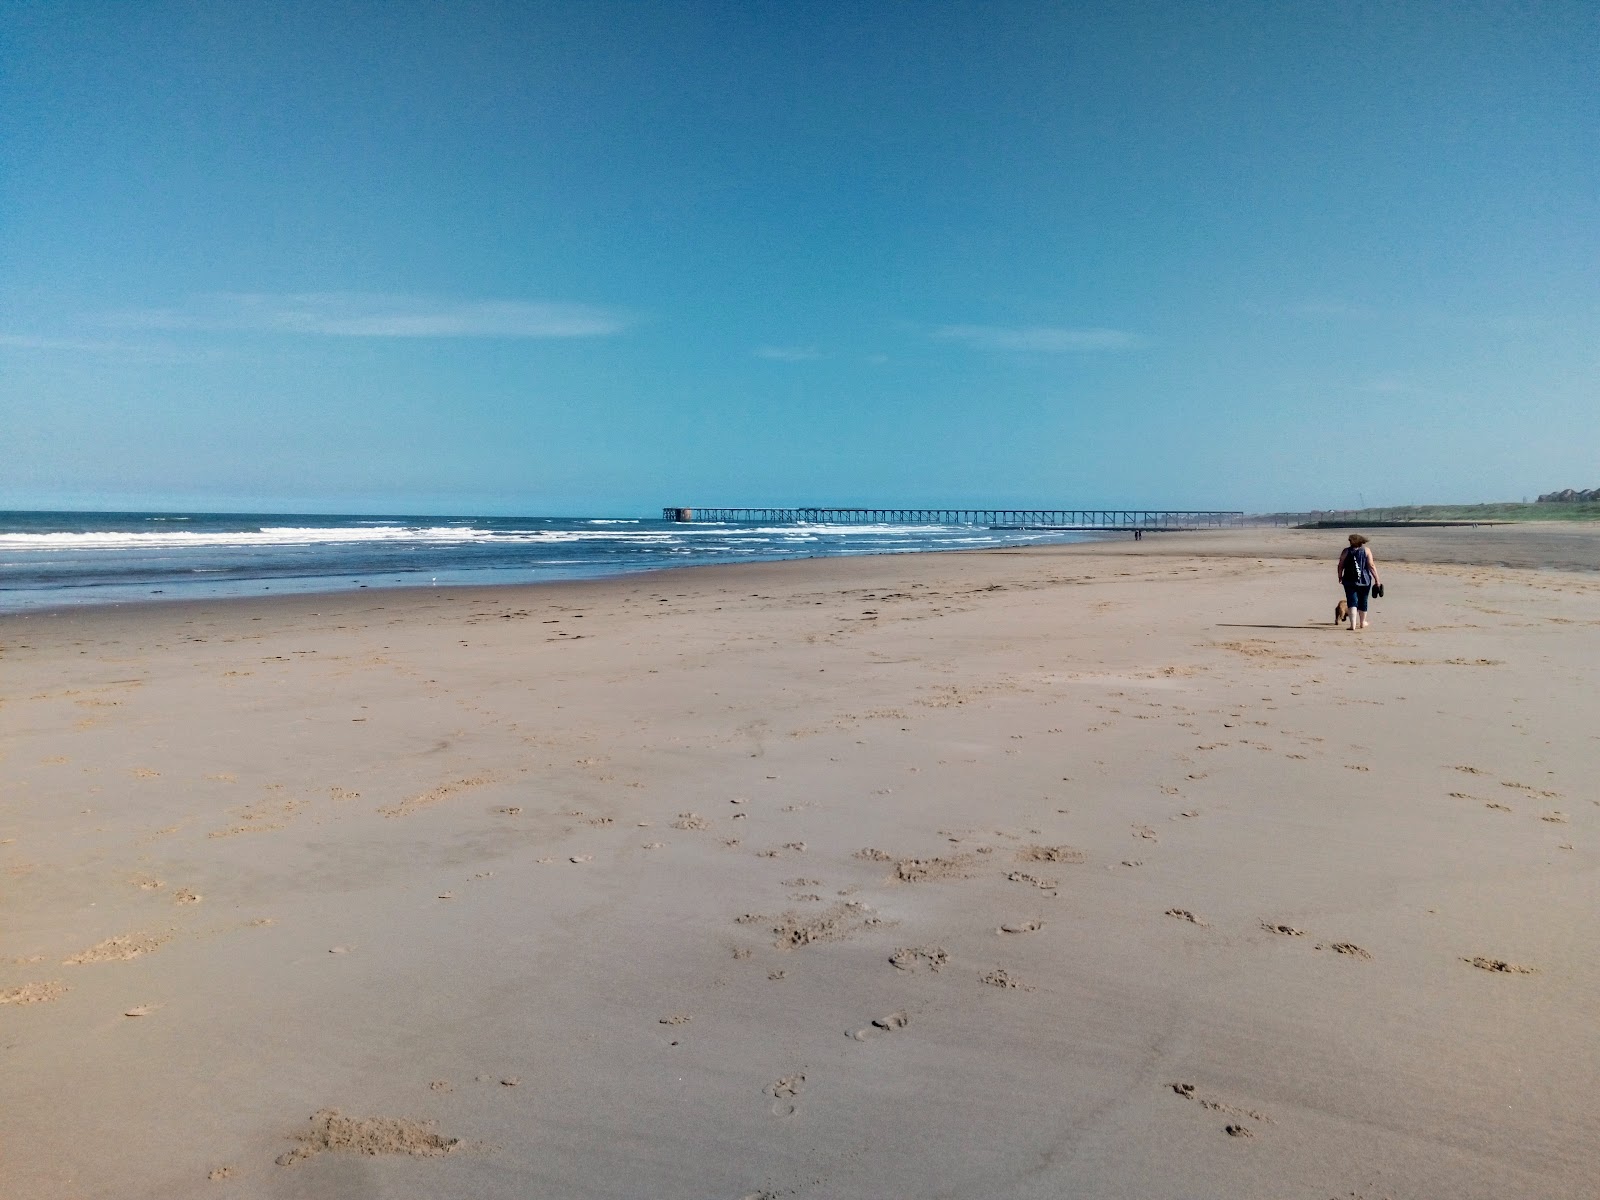 Crimdon beach'in fotoğrafı parlak kum yüzey ile